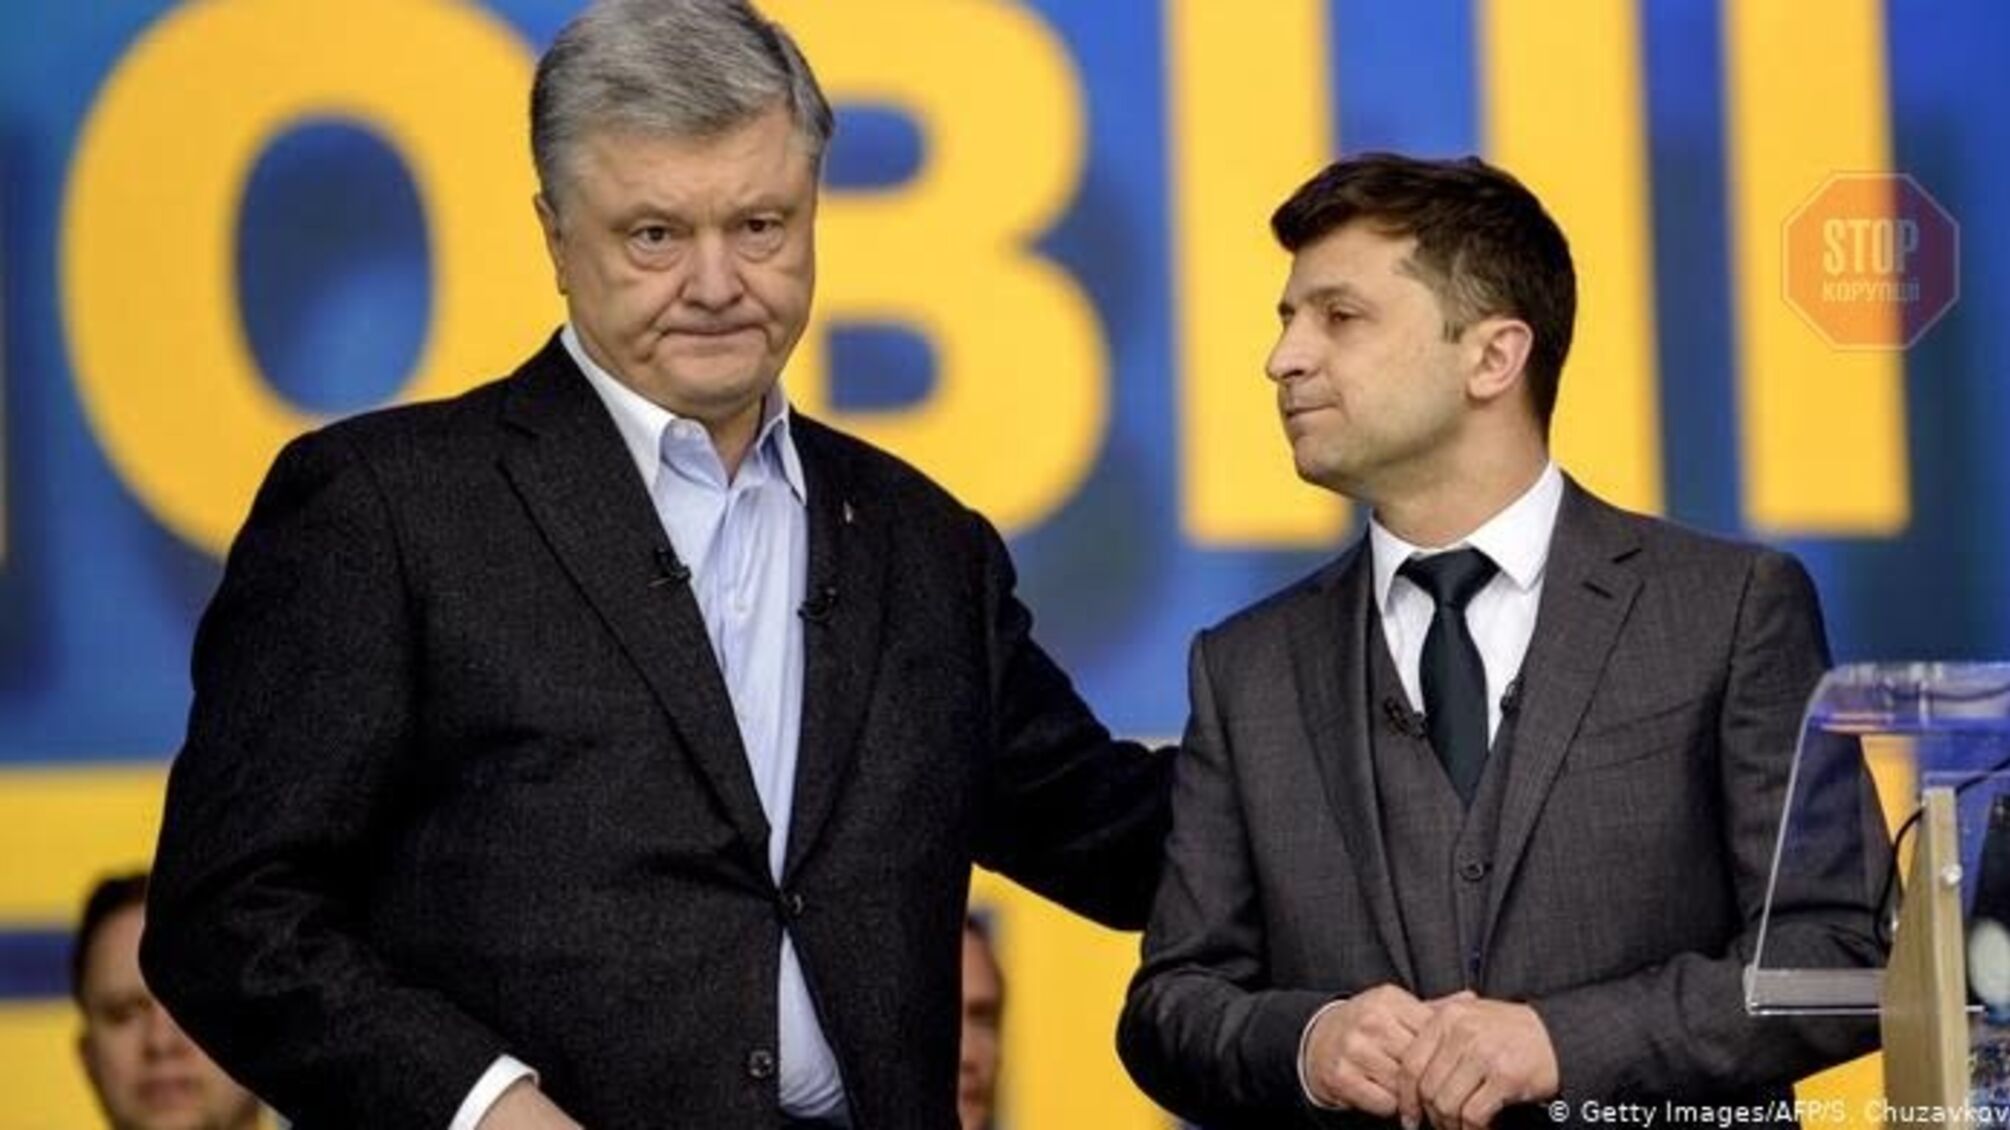 Свіжий президентський рейтинг: Зеленський перший, але його наздоганяє Порошенко  